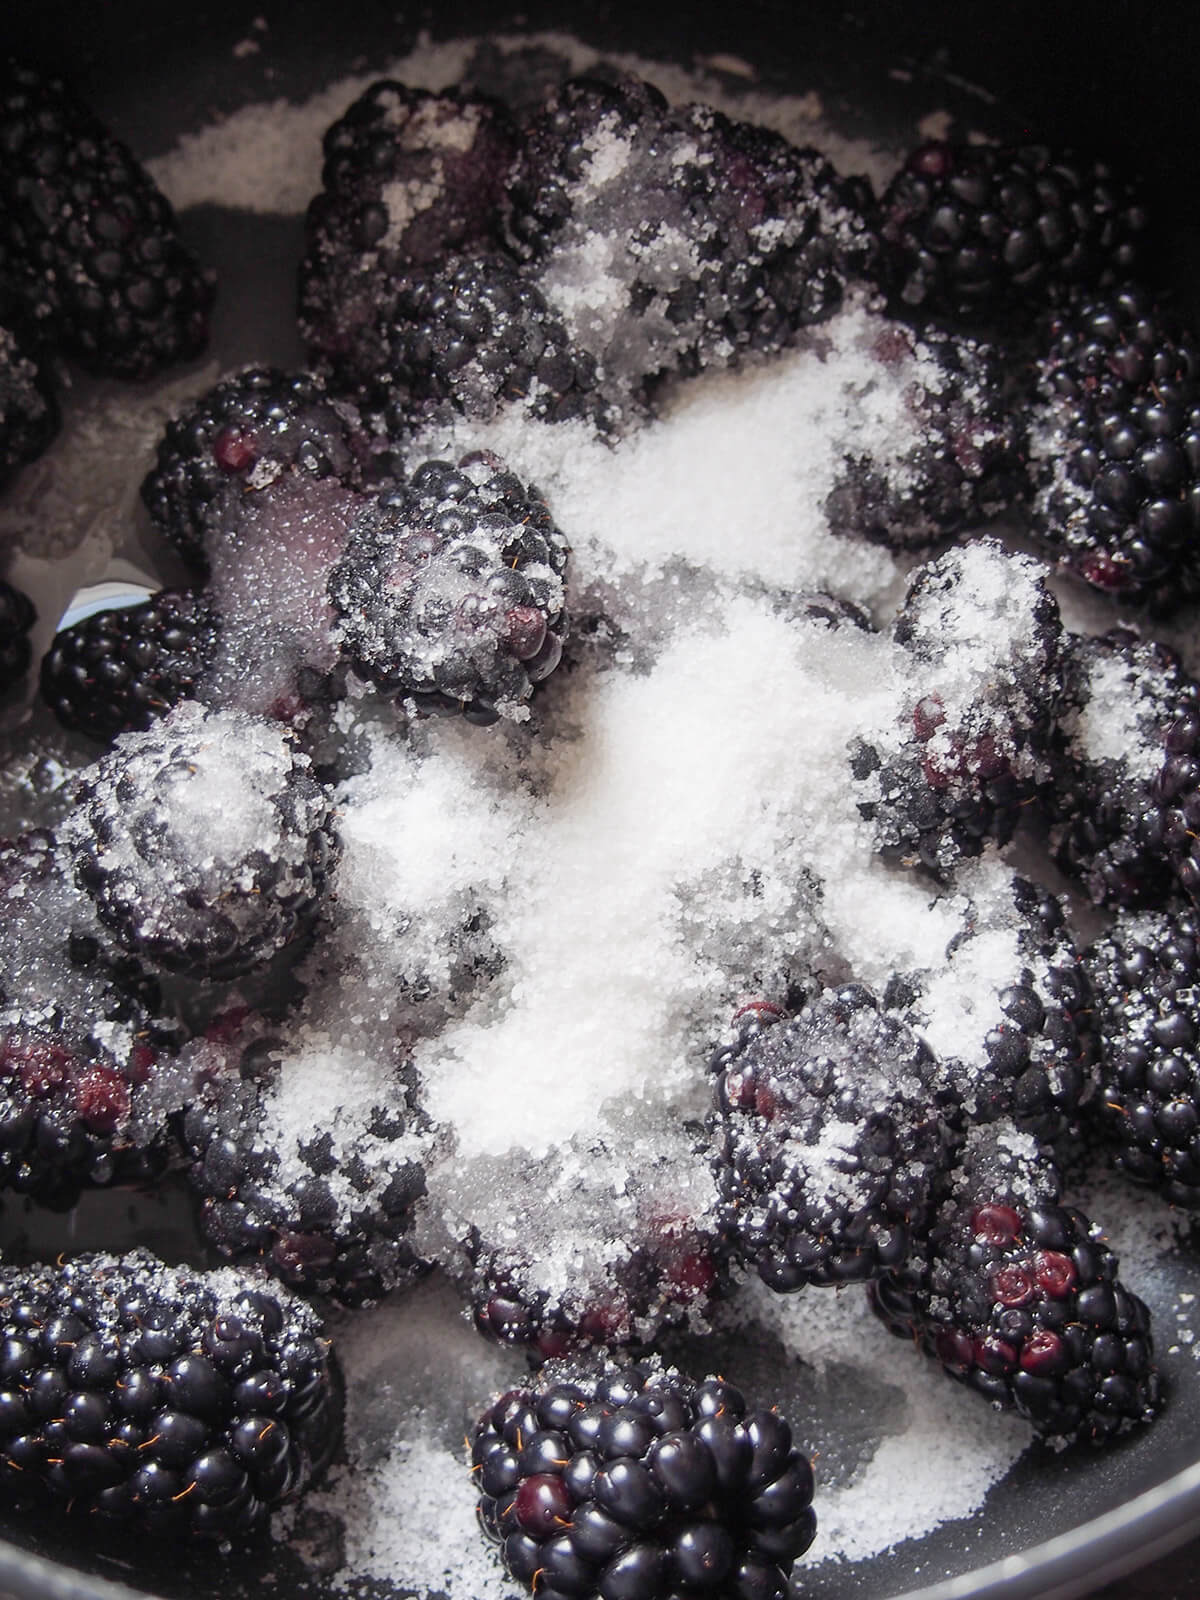 blackberries, sugar and lemon juice in pan